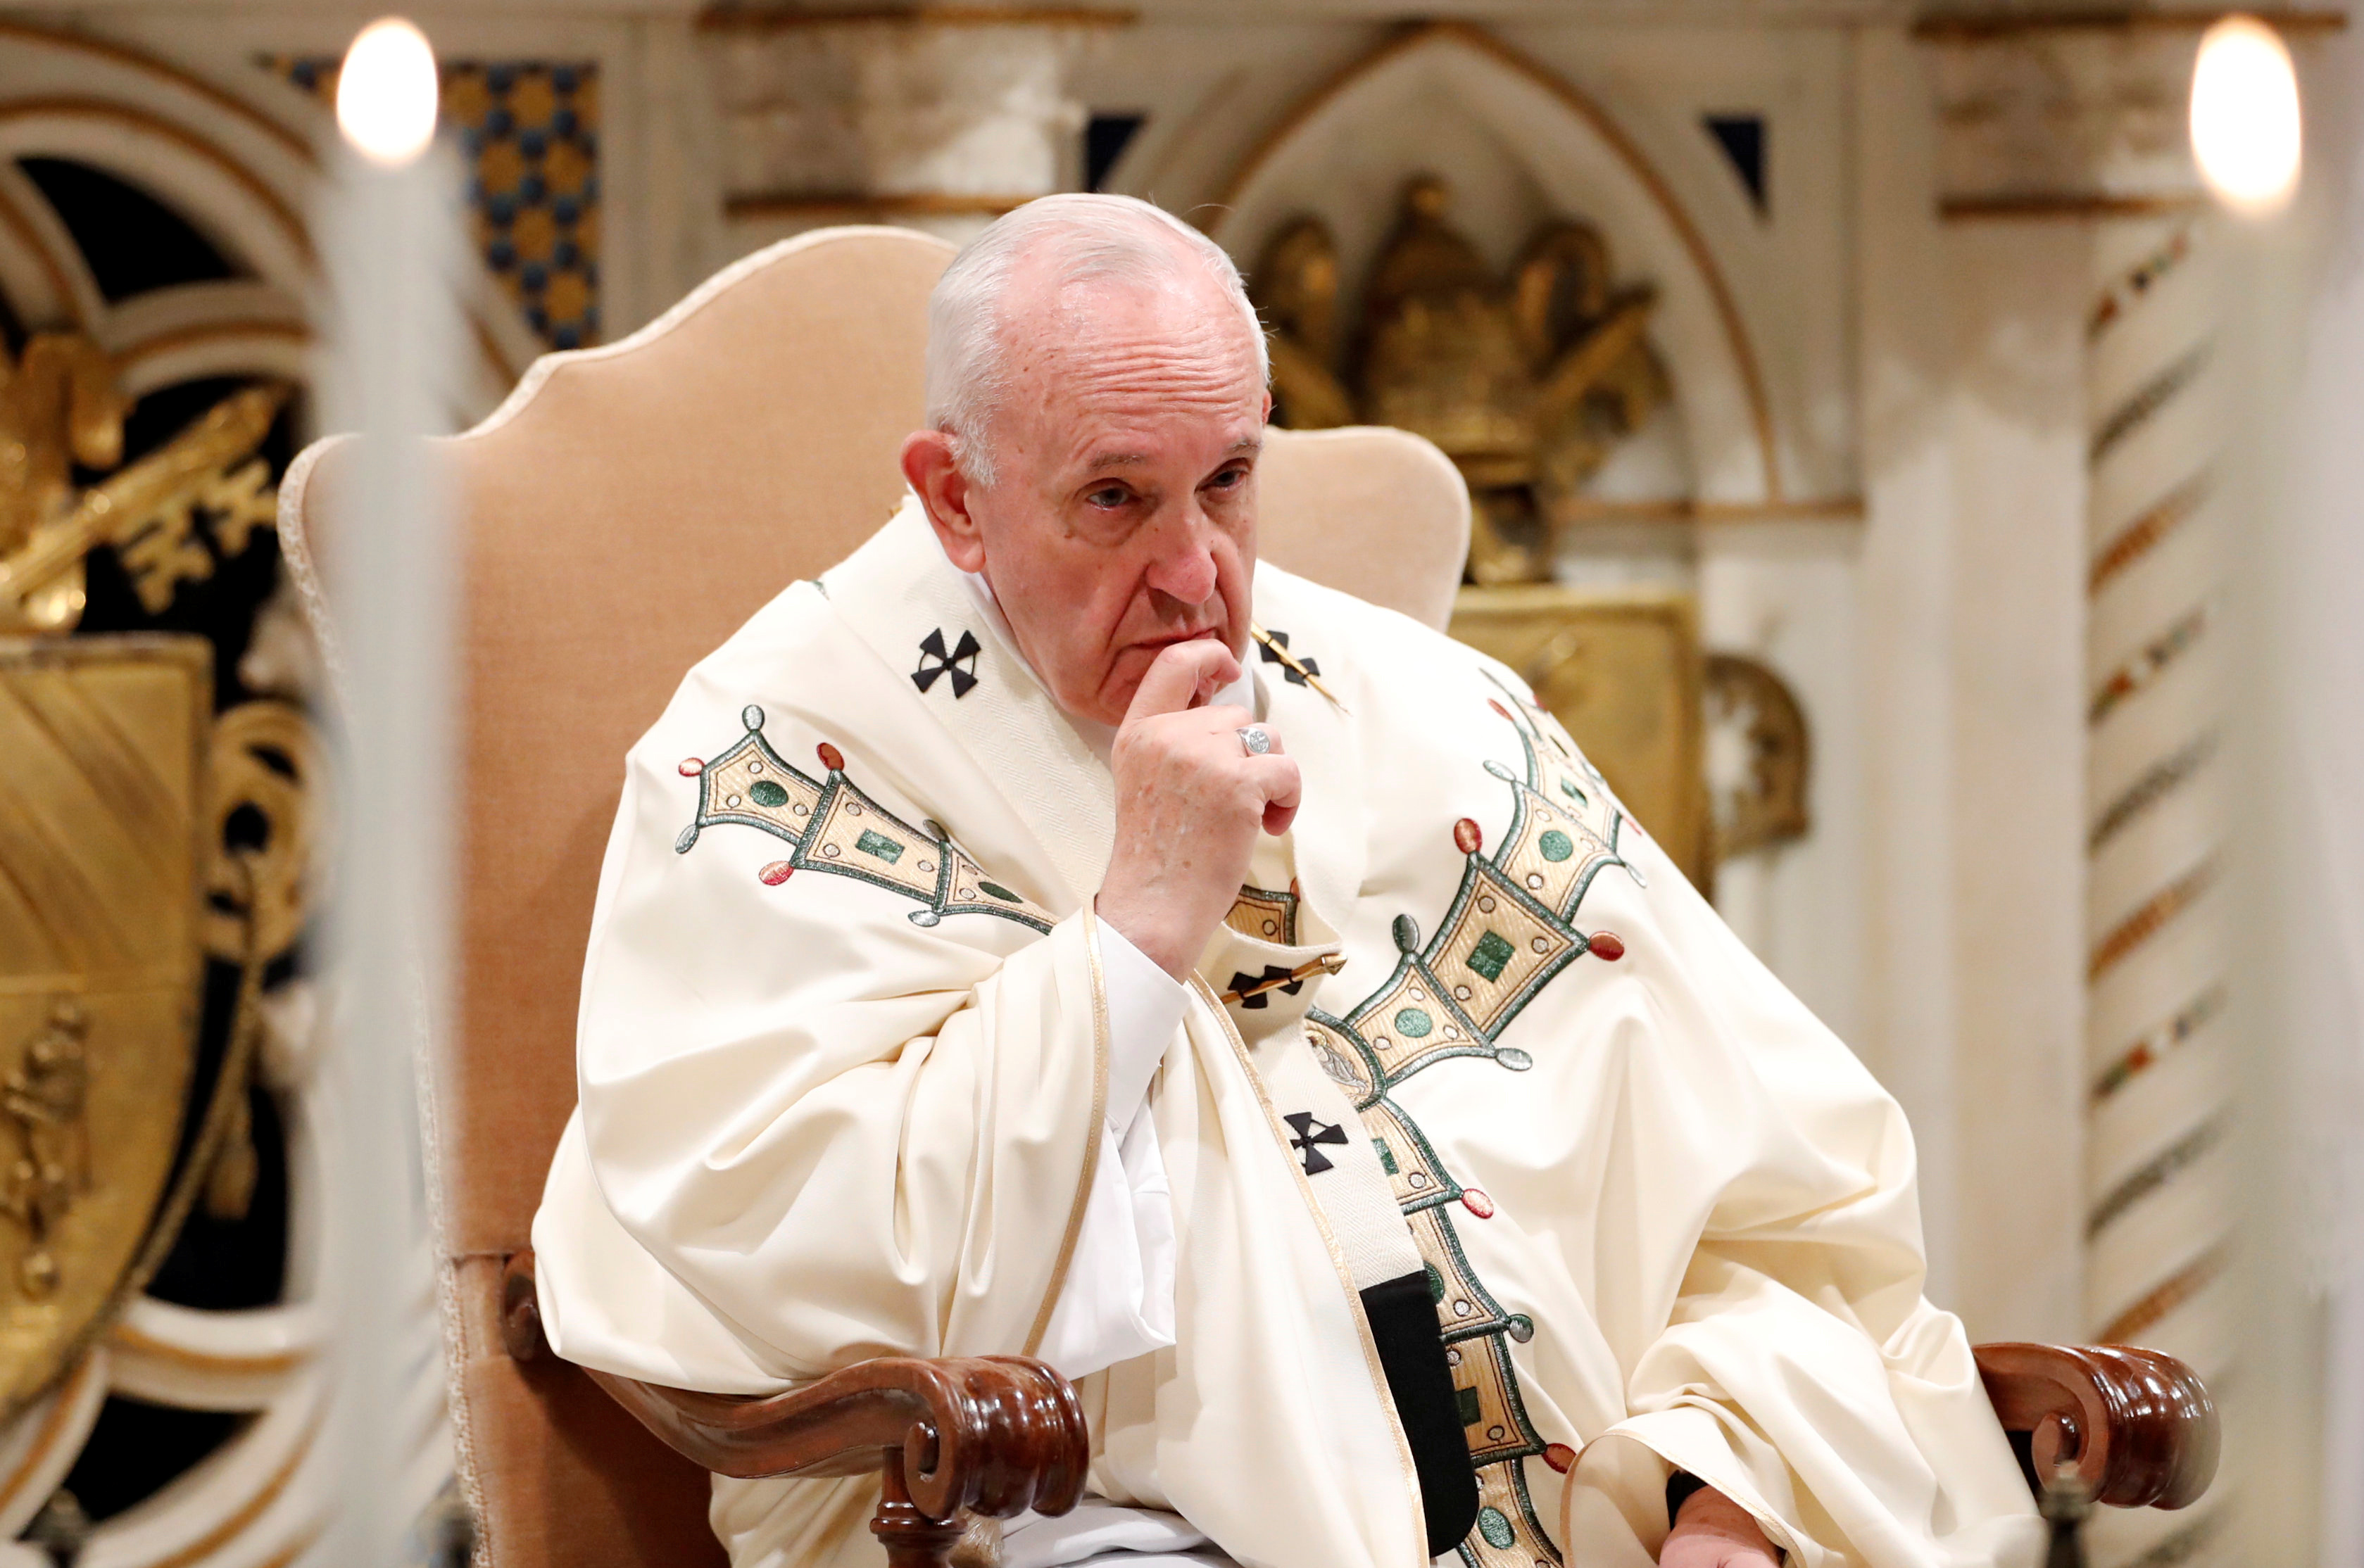 Σοκάρει Ιταλός δημοσιογράφος: Ο Πάπας αρνείται ότι ο Χριστός είναι Θεός κι αναστήθηκε